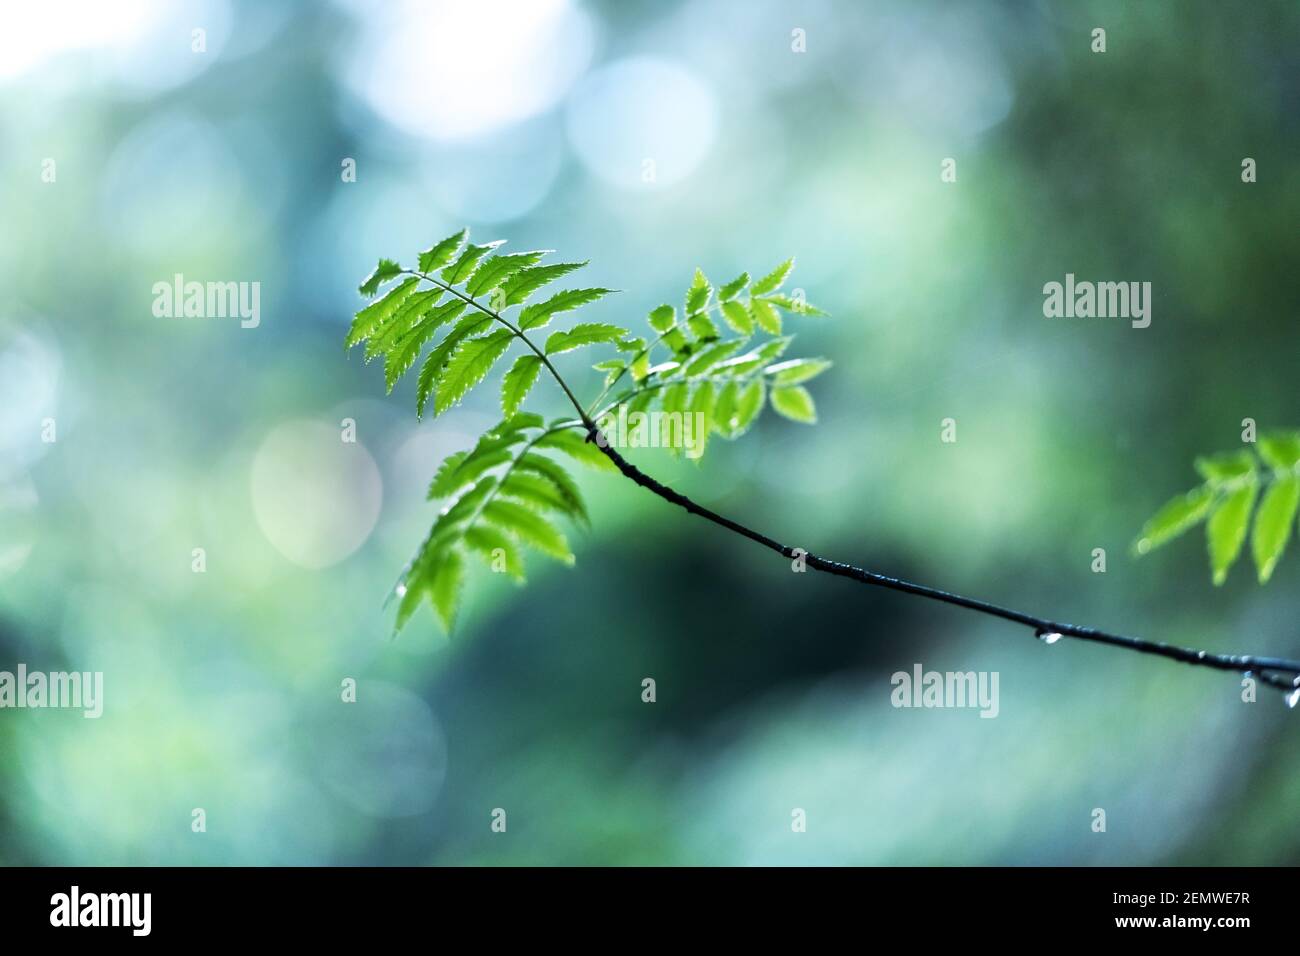 Nahaufnahme Naturansicht von grünen Blättern auf Frühlingszweigen auf verschwommenem Hintergrund im Wald. Copyspace machen Verwendung als natürliche grüne Pflanzen und Ökologie Hintergrund Stockfoto